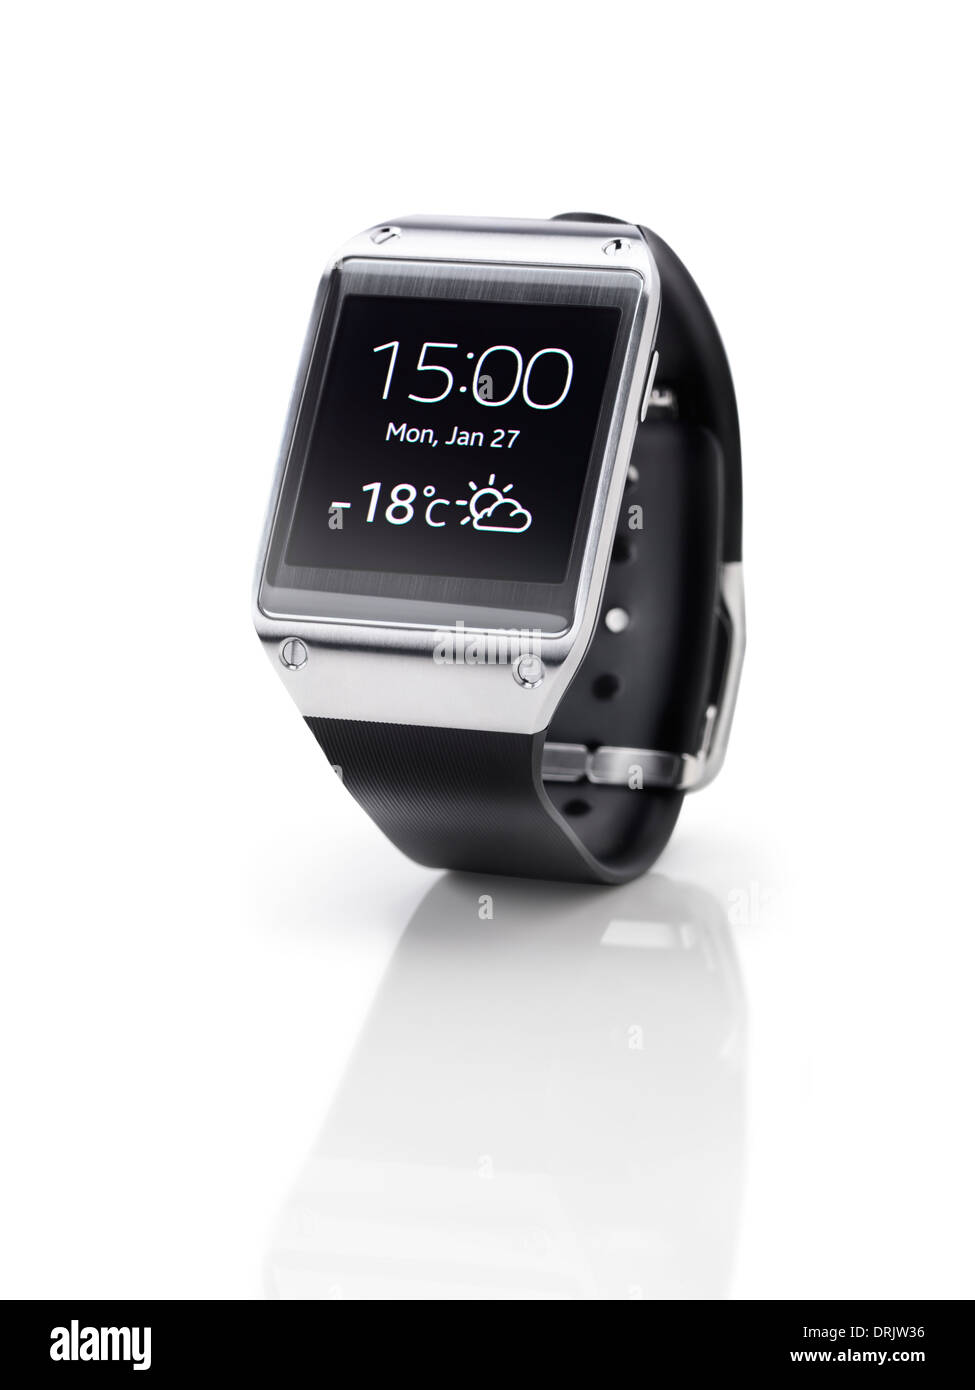 Samsung Galaxy marcha smartwatch closeup. Ver aisladas sobre fondo blanco con trazado de recorte. Foto de stock